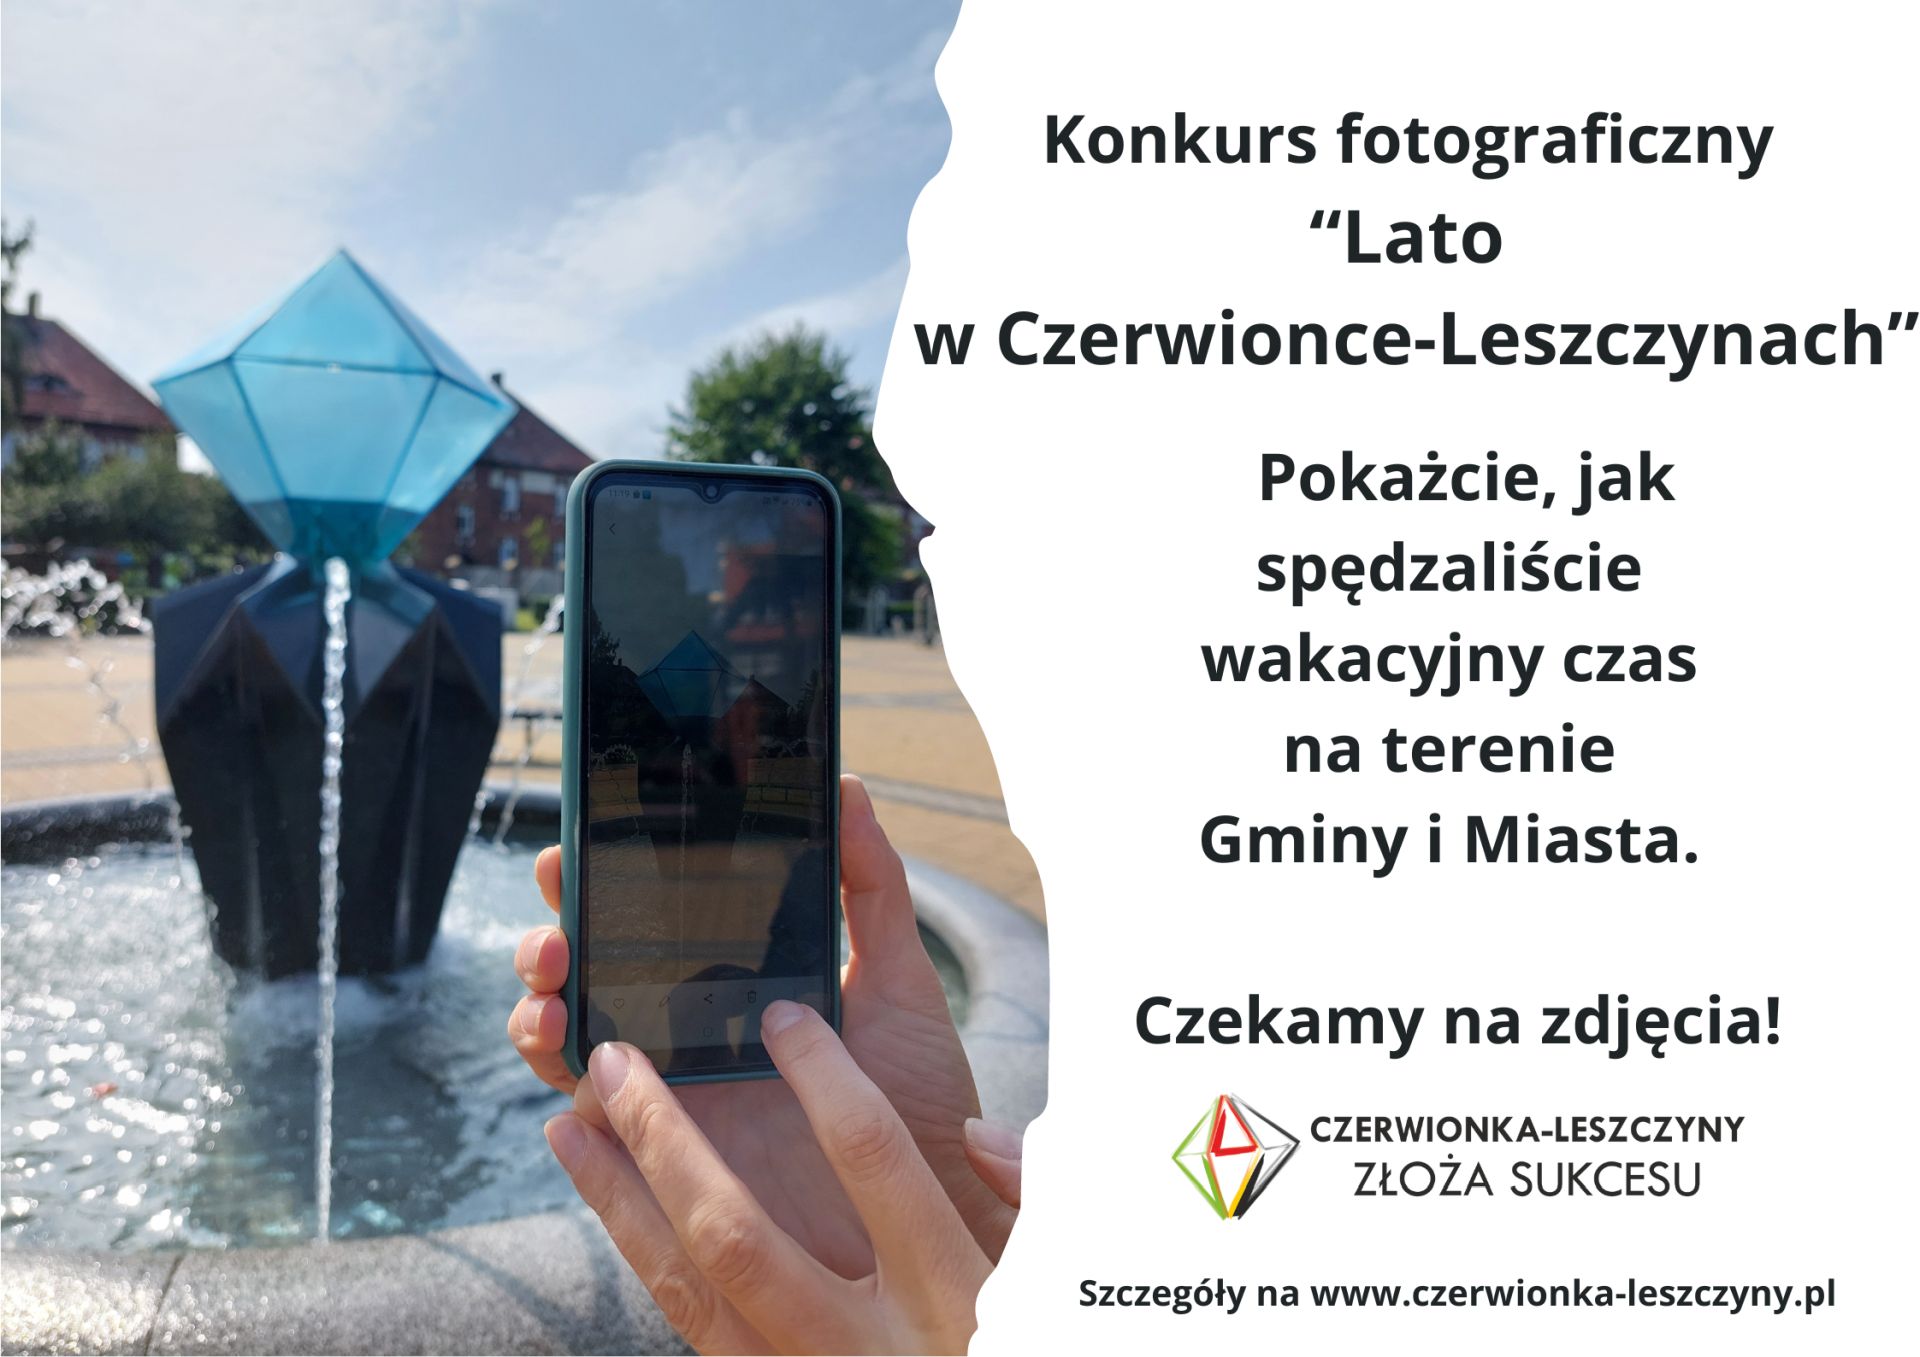 Konkurs fotograficzny Lato w Czerwionce-Leszczynach